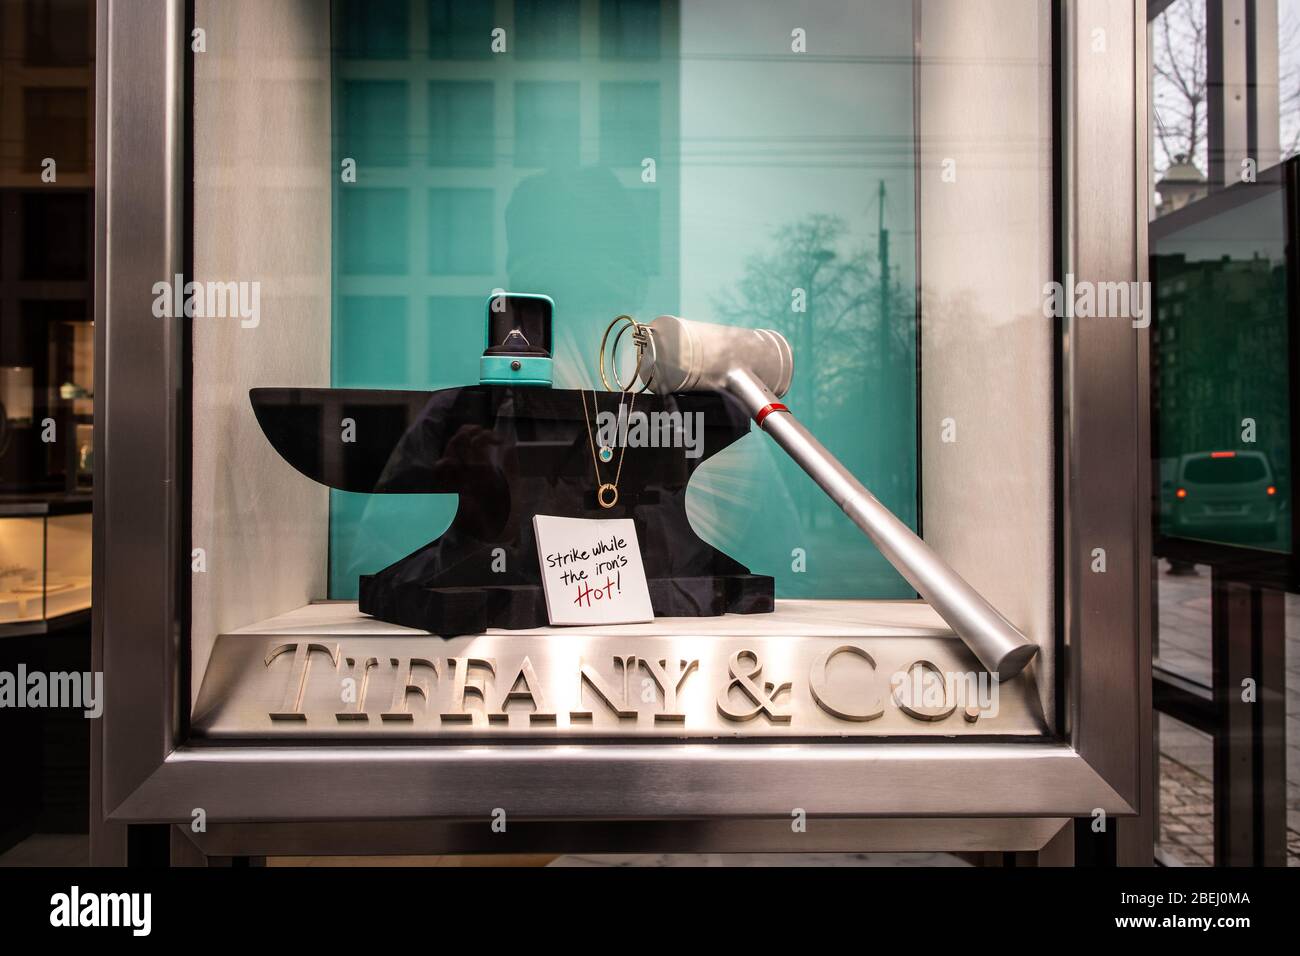 Bruselas, Bélgica, 2020 de enero: Tienda de joyas Tiffany, escaparates, exposición con joyas de diamantes, anillos, collares, pendientes de Tiffany & Co Foto de stock